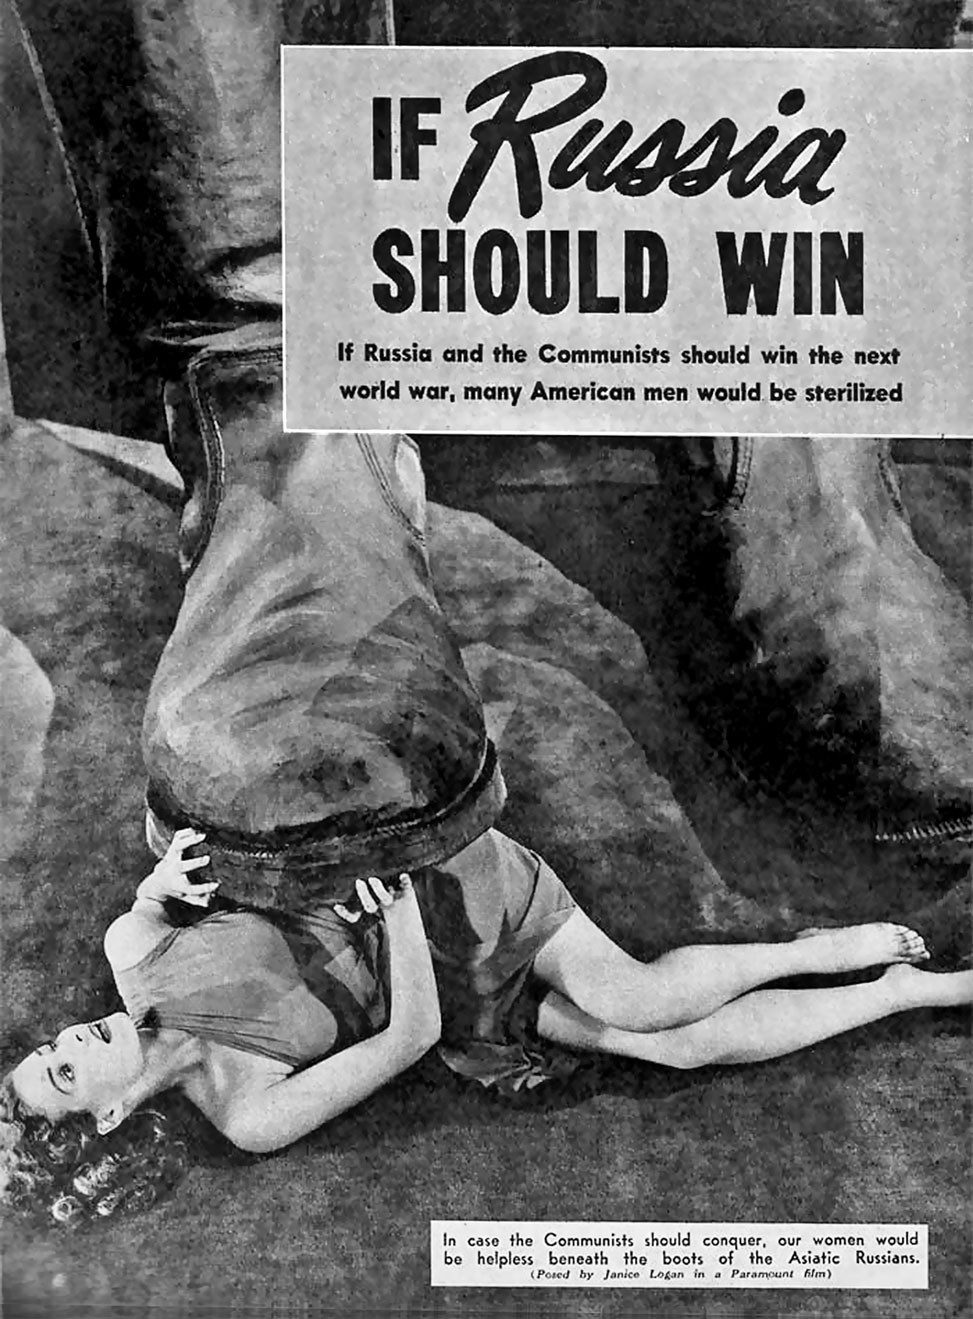 1953. Как всё изменилось! Доктрина сдерживания: «Наши женщины будут беззащитны под сапогом русских азиатов». Американский плакат времен холодной войны.